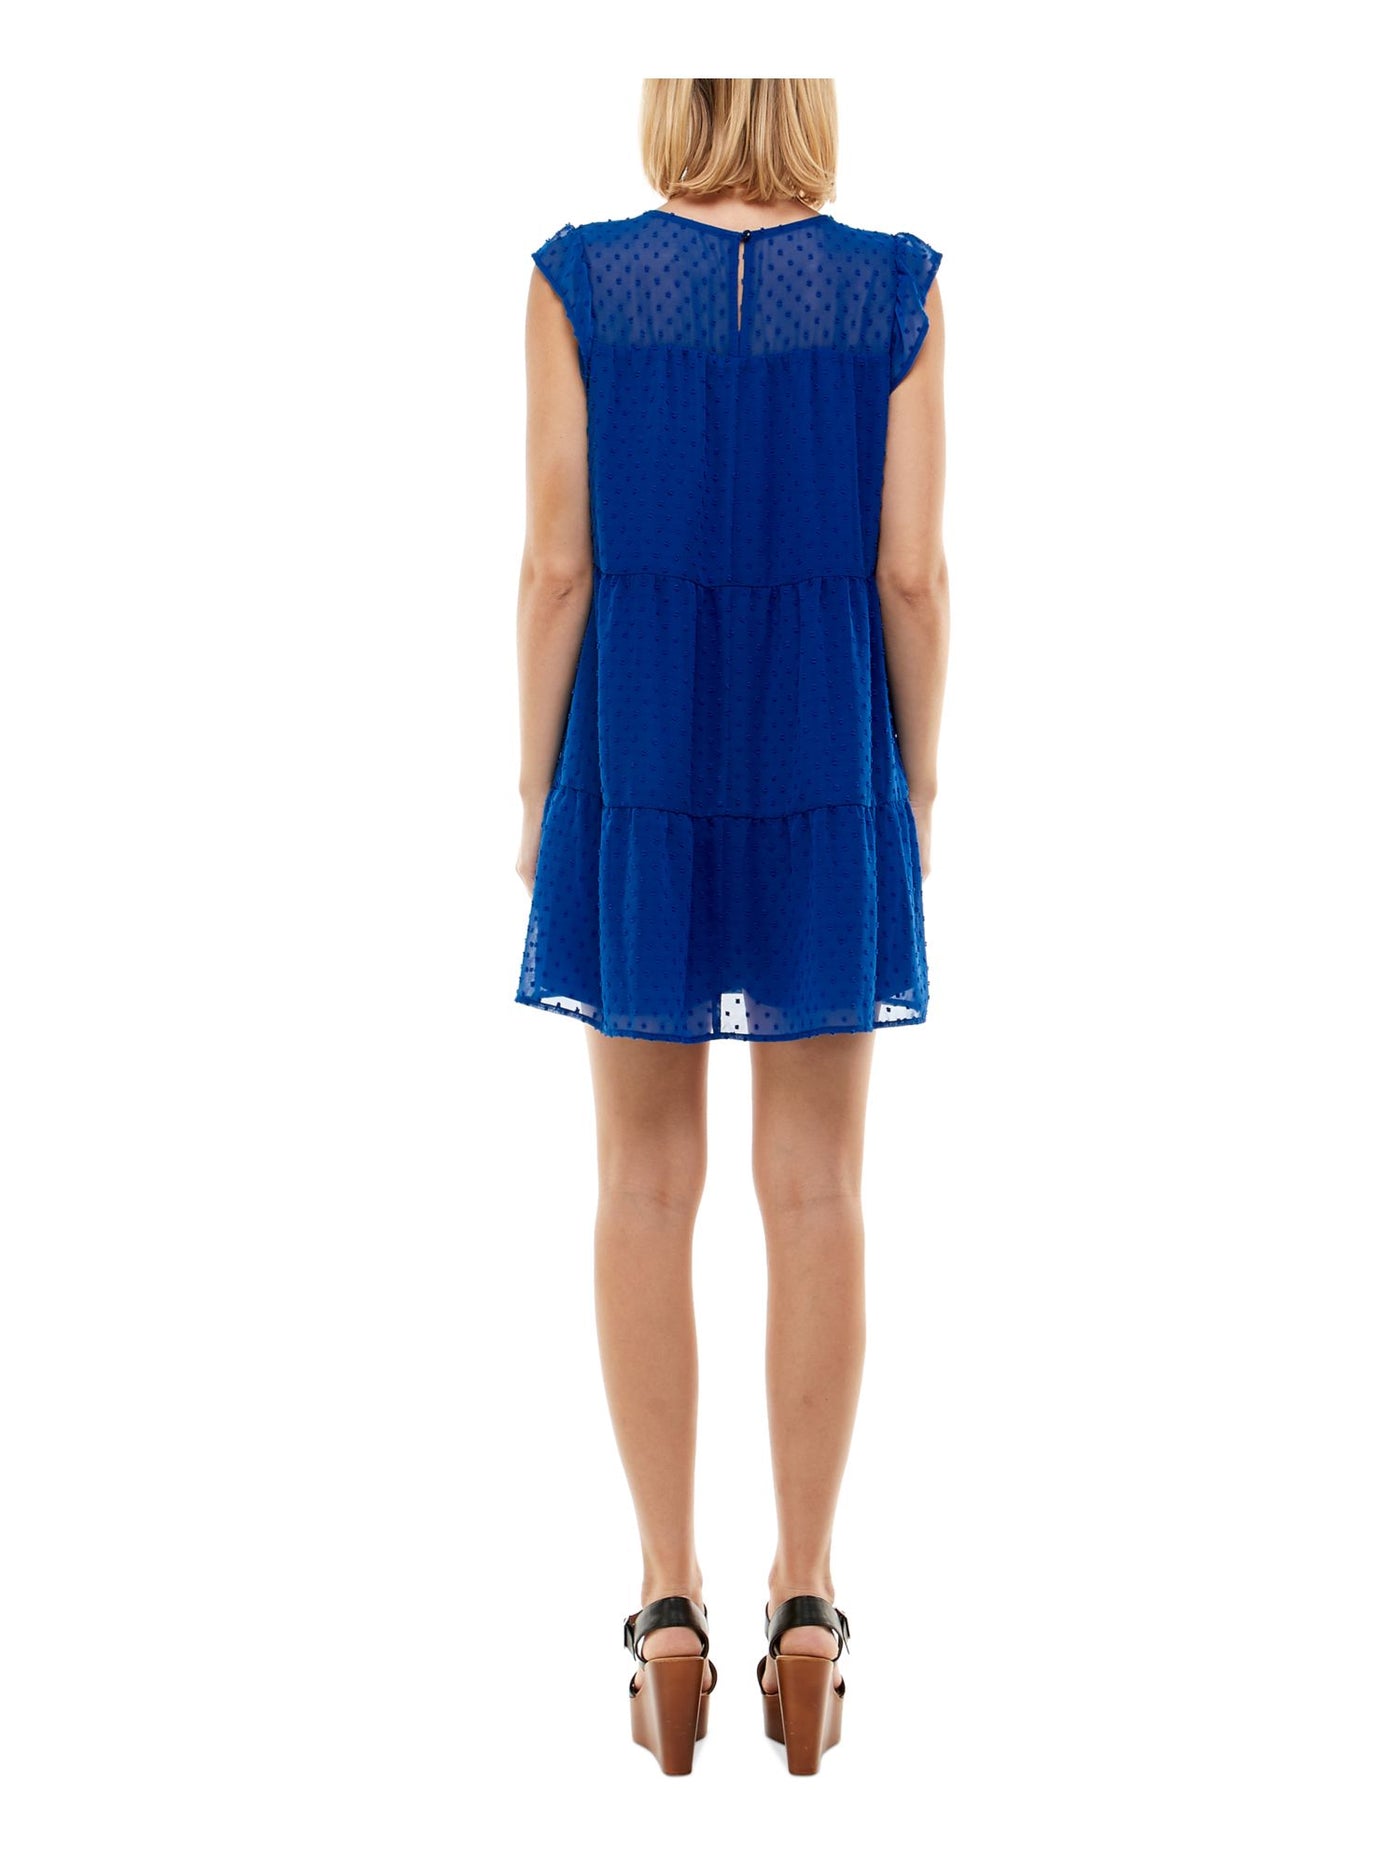 CRYSTAL DOLLS Womens Blue Sheer Button Closure Tiered Flutter Sleeve Scoop Neck Short Sheath Dress Juniors XXL